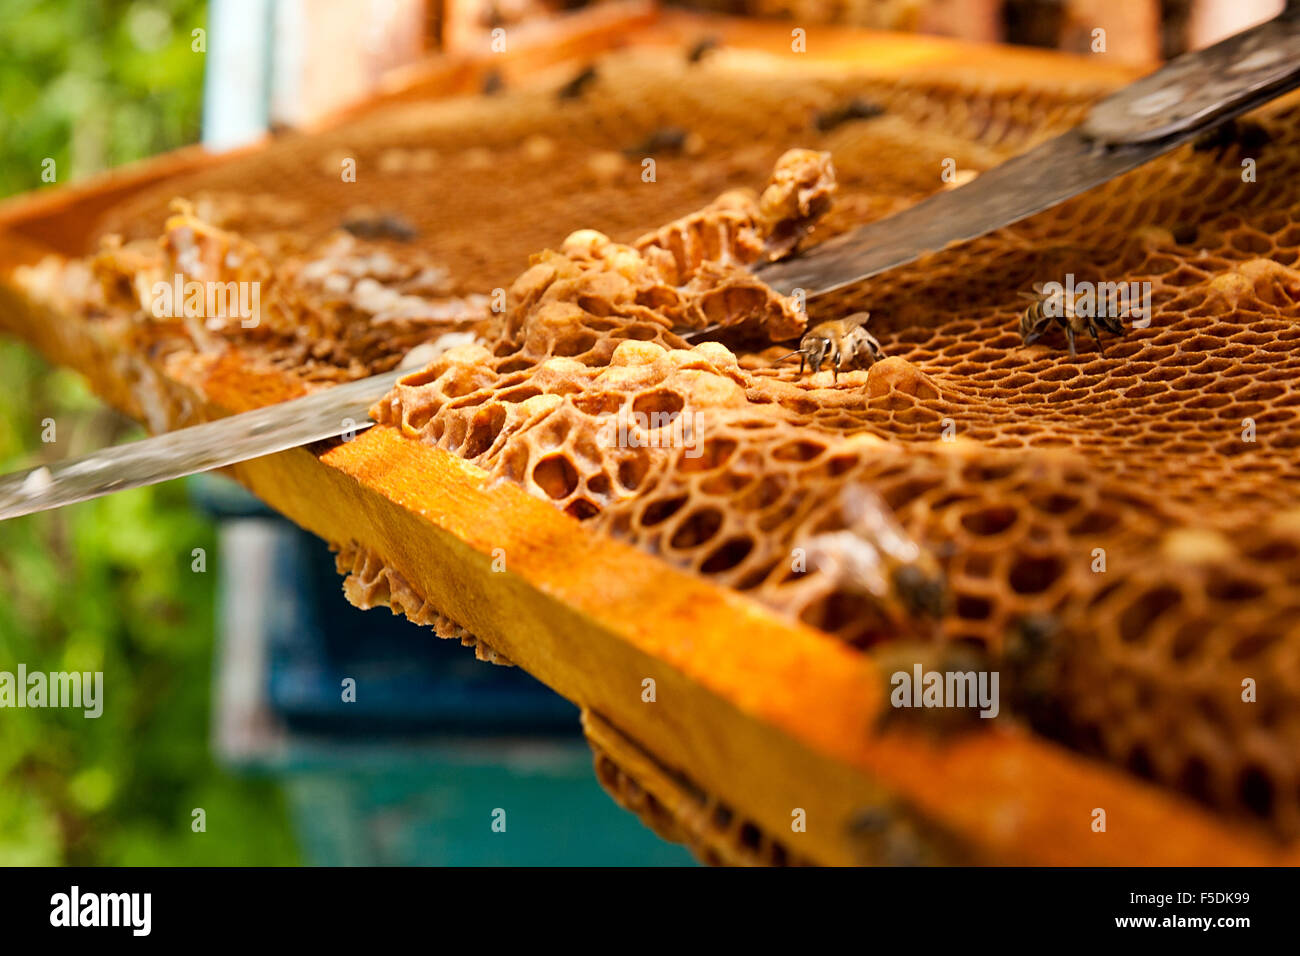 Apicoltore verifica di un alveare per garantire la salute della colonia di api o la raccolta del miele. Le api da vicino che mostra alcuni animali e levigare Foto Stock